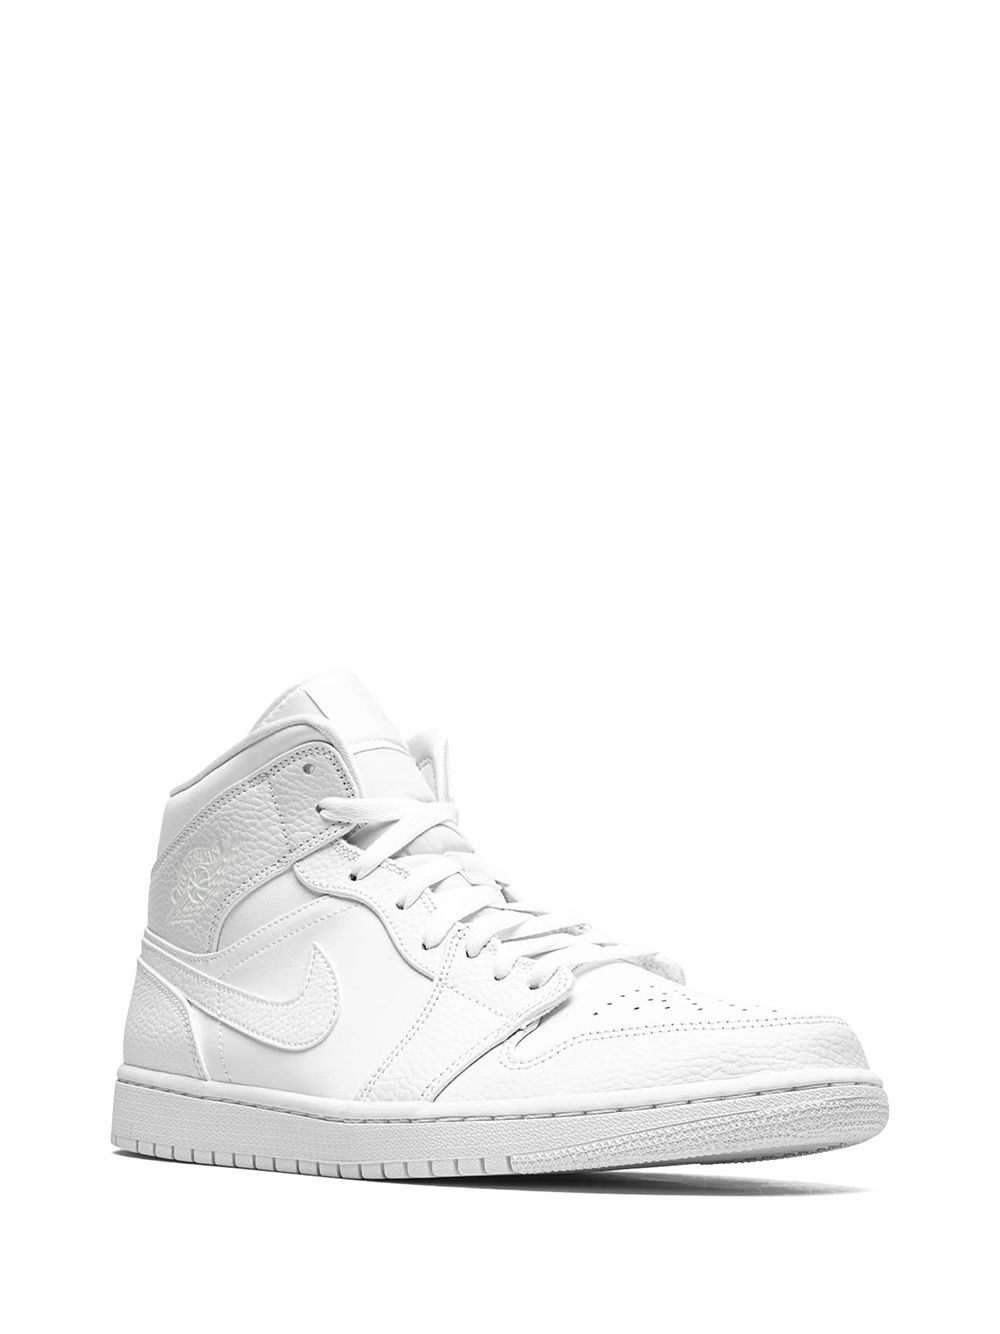 Air Jordan 1 Mid "Triple White" sneakers - 2